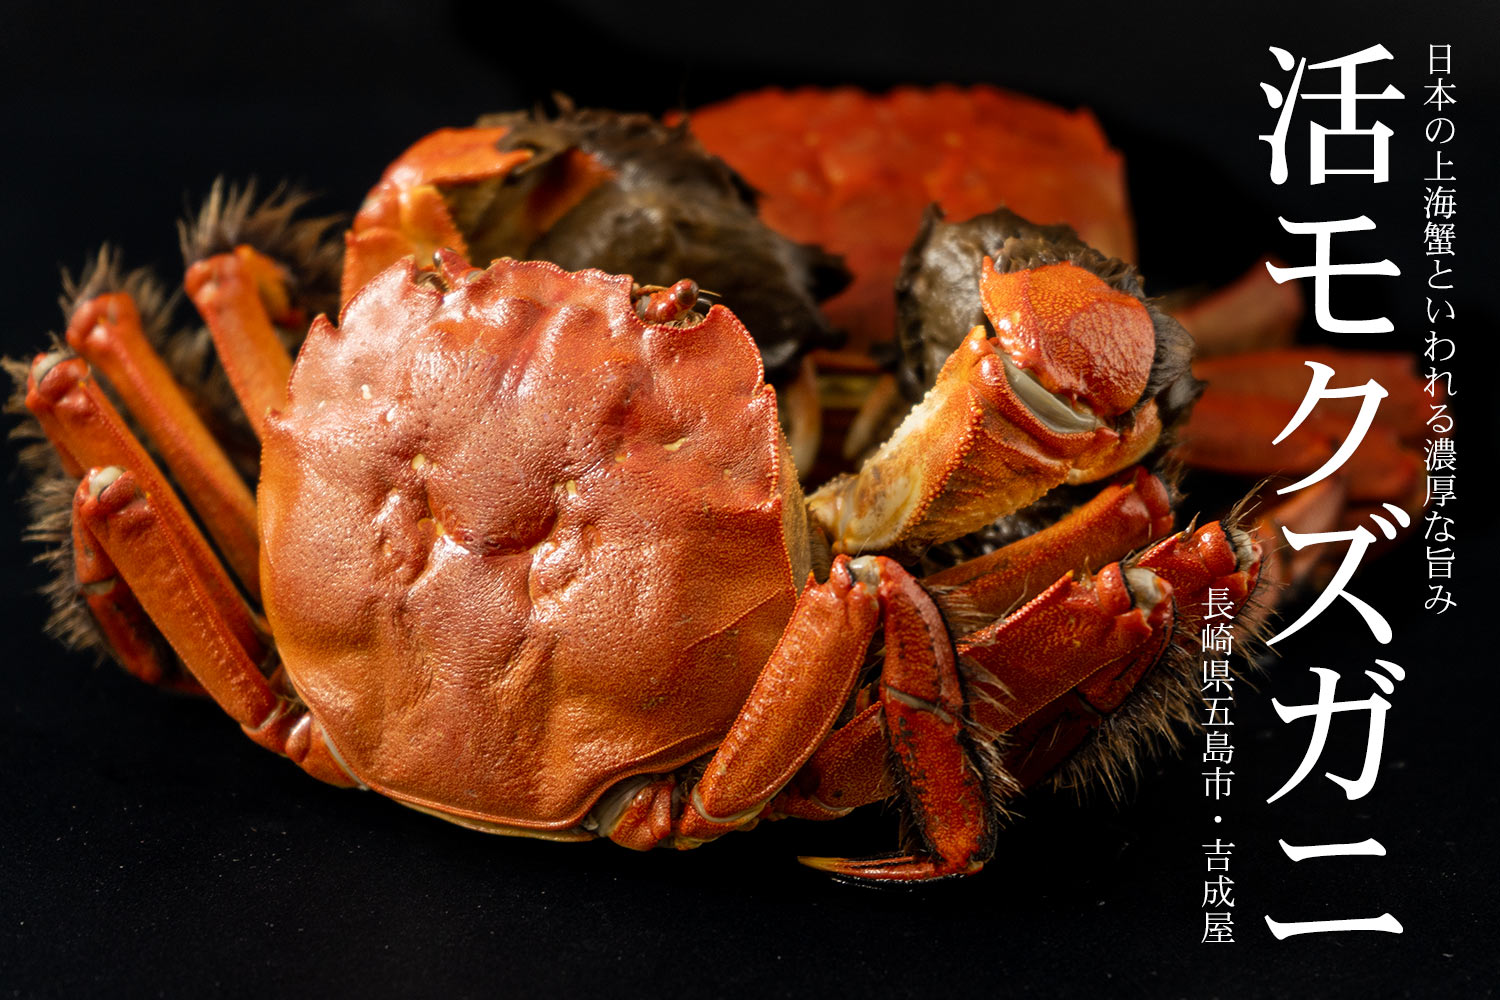 長崎県五島市・吉成屋 日本の上海蟹といわれる濃厚な旨み「天然活モクズガニ」